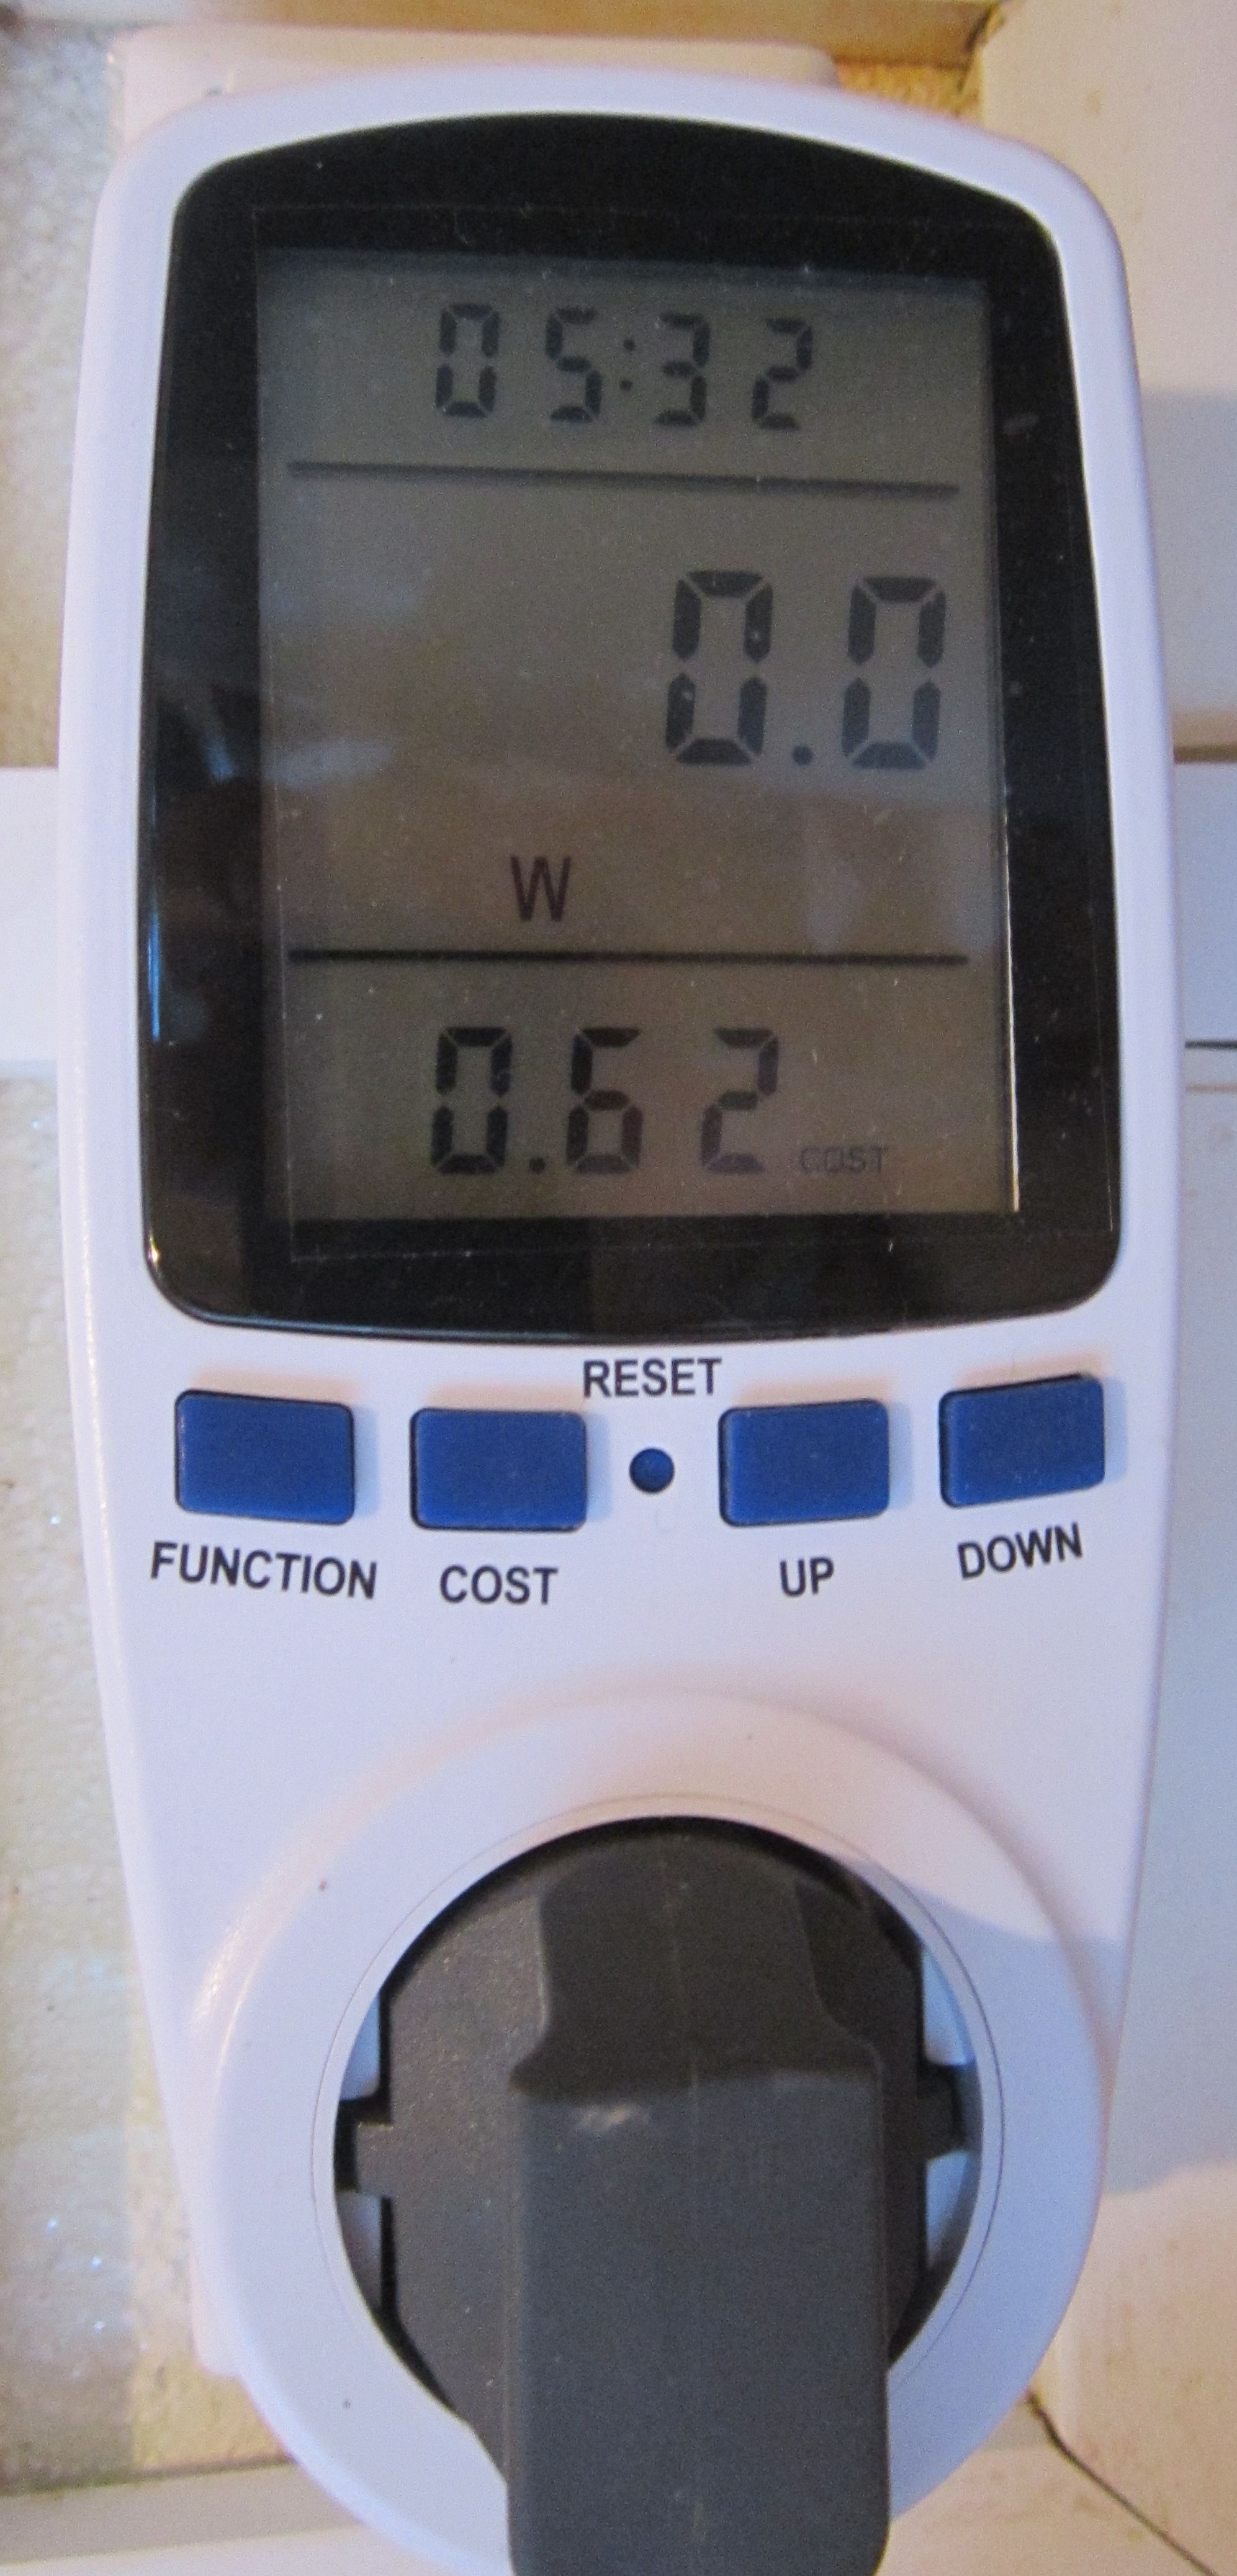 2 Время, мощность (в момент снятия показаний), стоимость потраченной электроэнергии